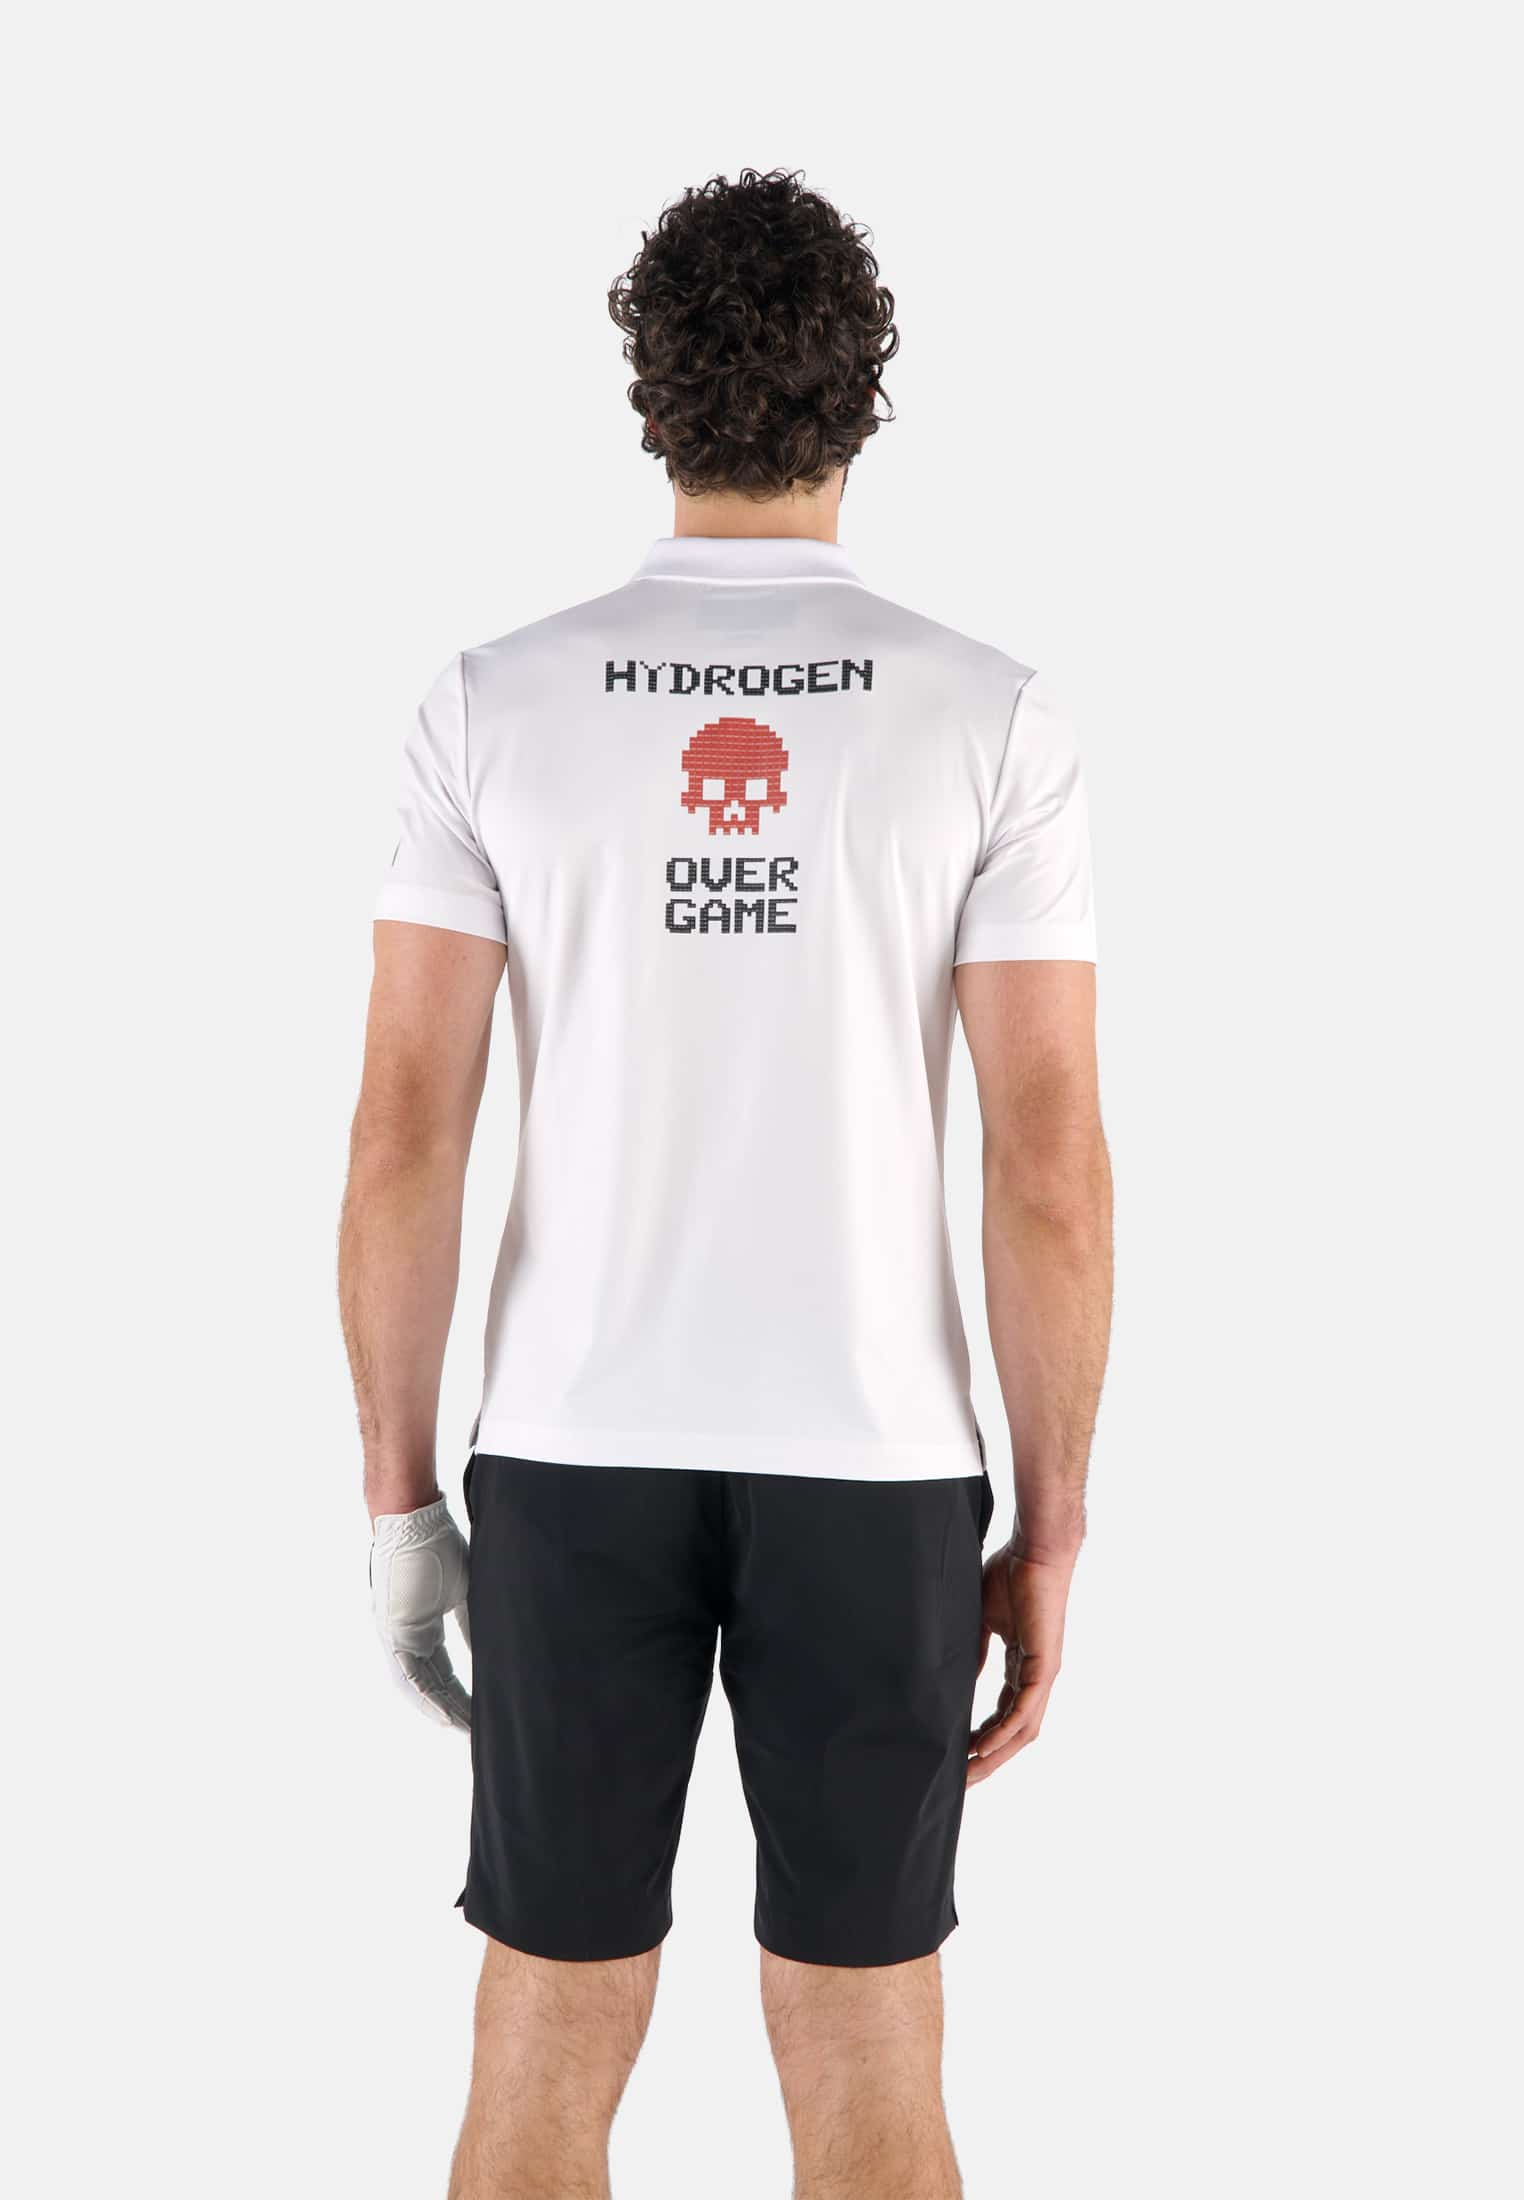 POLO CON STAMPA OVER GAME - Outlet Hydrogen - Abbigliamento sportivo